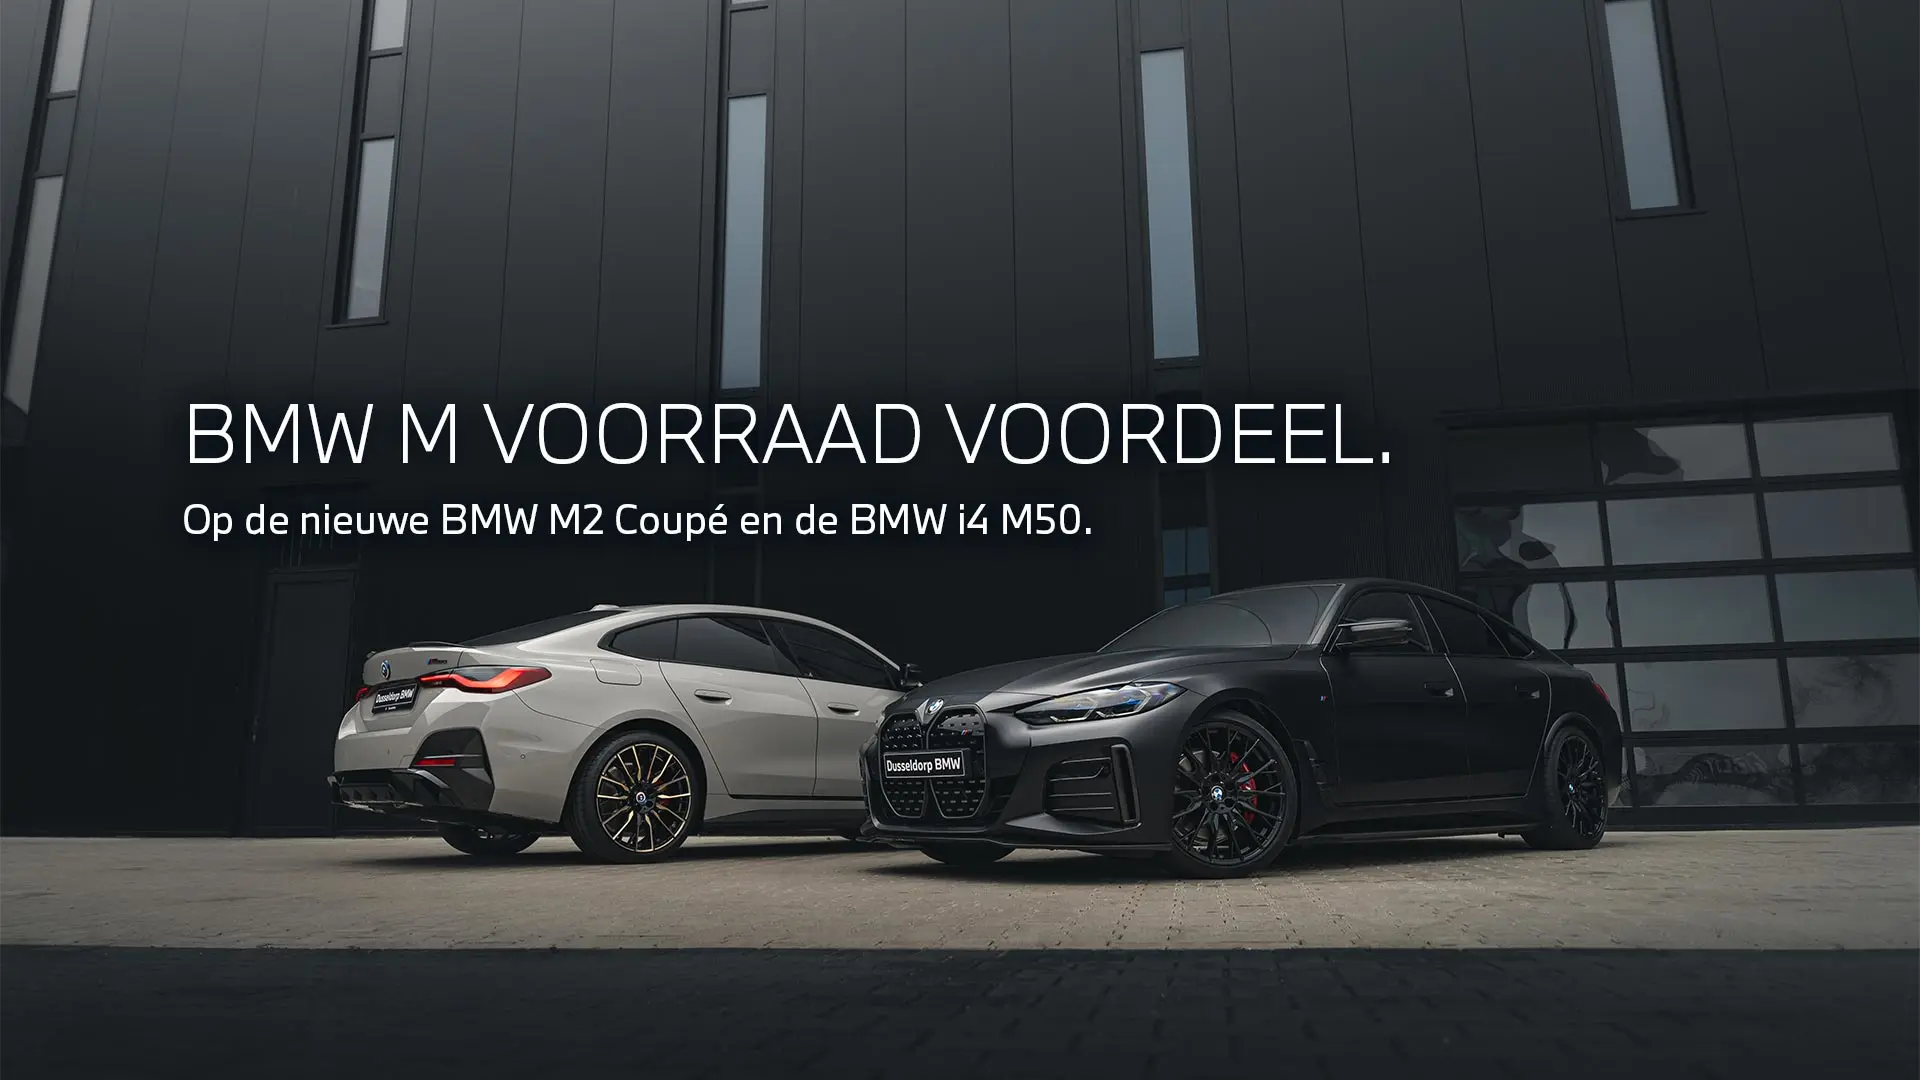 BMW M Voorraad voordeel op de nieuwe BMW M2 en BMW i4 M50